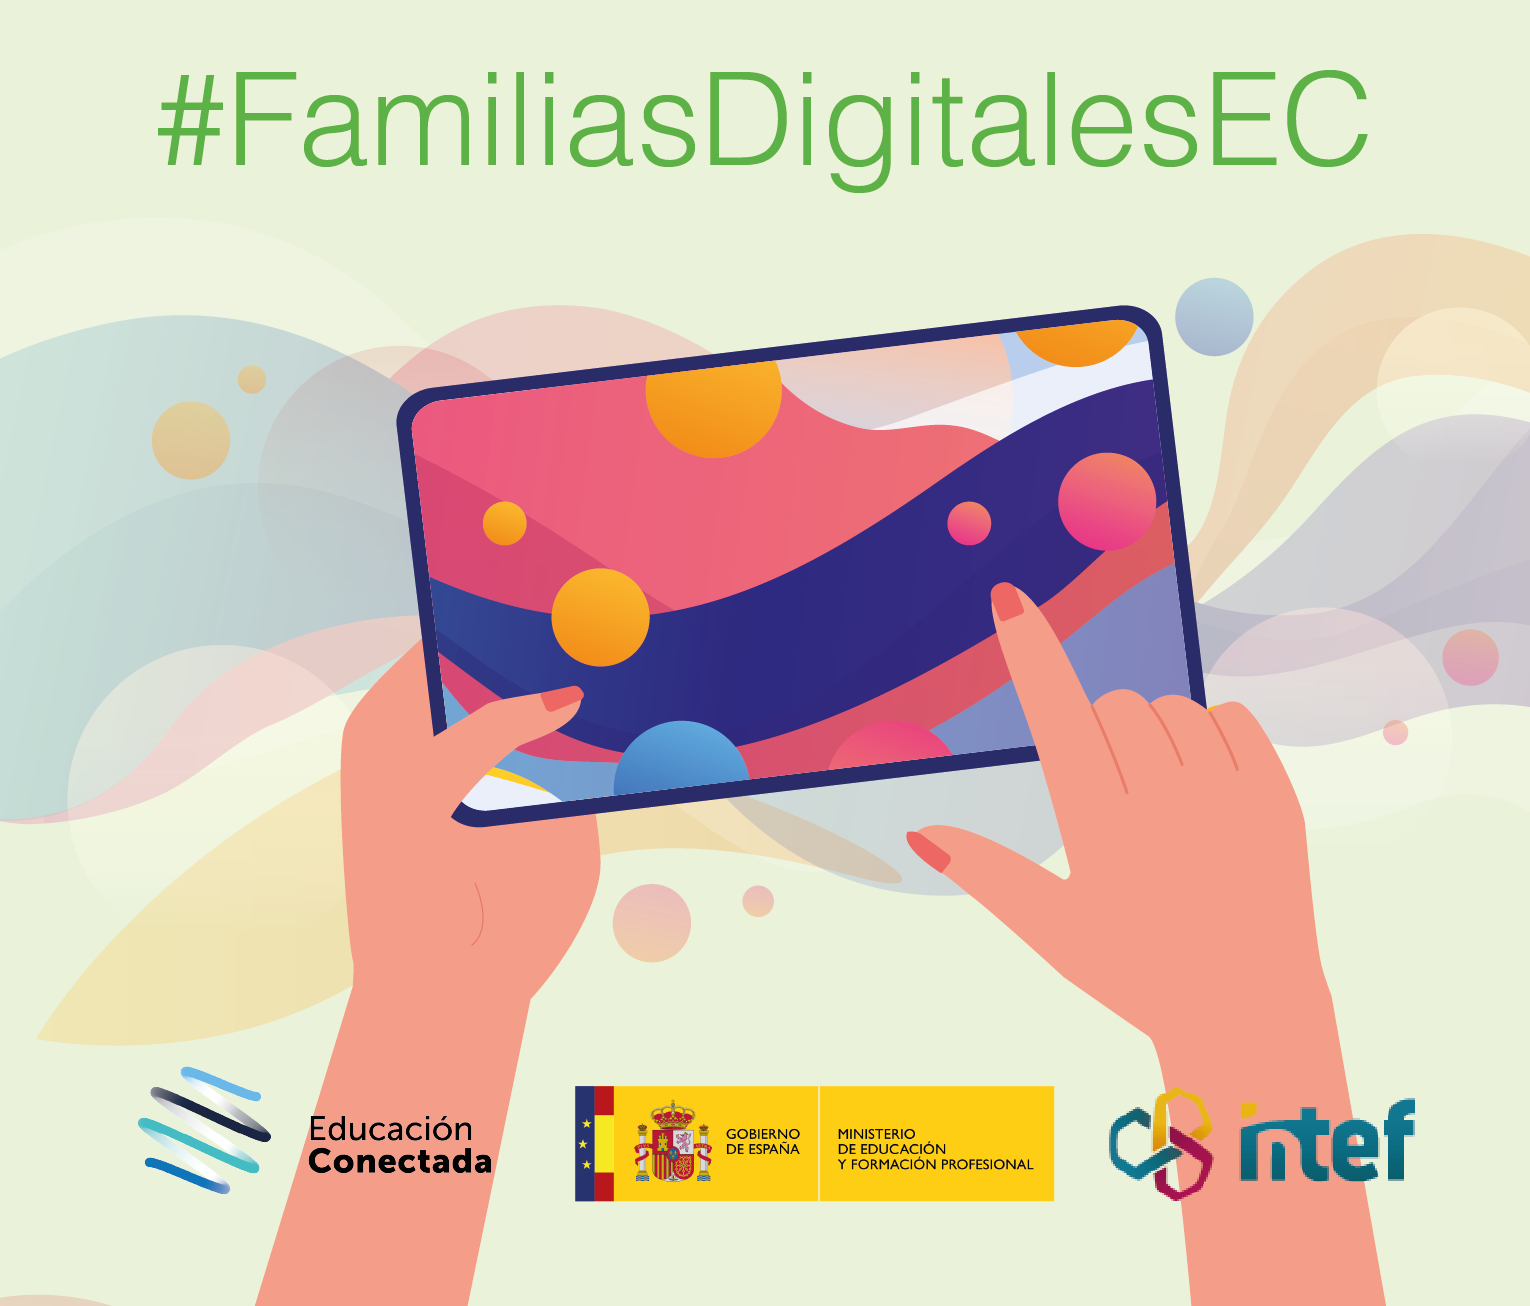 Competencias digitales en la familia: creación de contenidos digitales (avanzado) FamiliasDig8